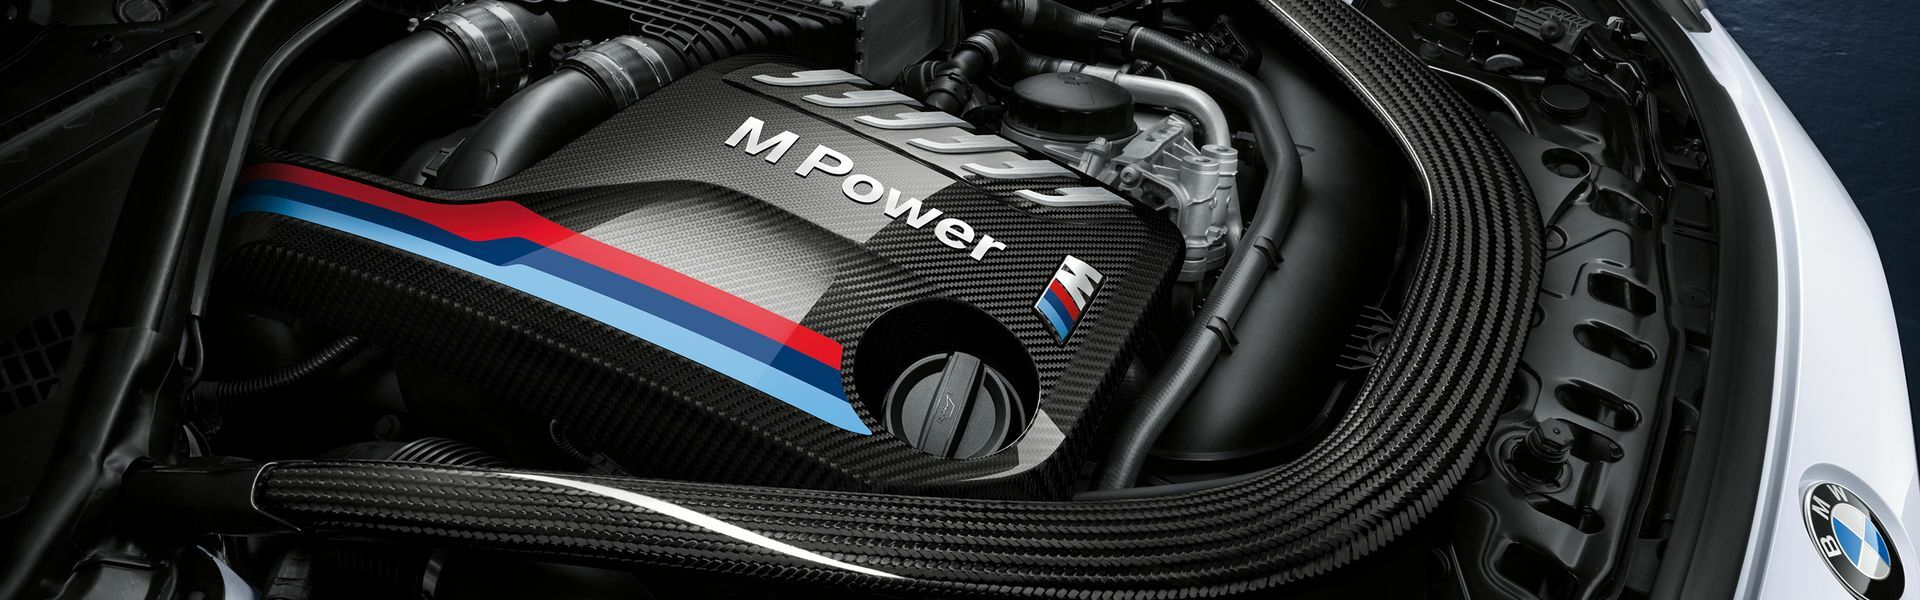 Zvýšení výkonu/ Softwarové úpravy/ Drobné performance díly pro automobil Porsche Panamera 4S 970